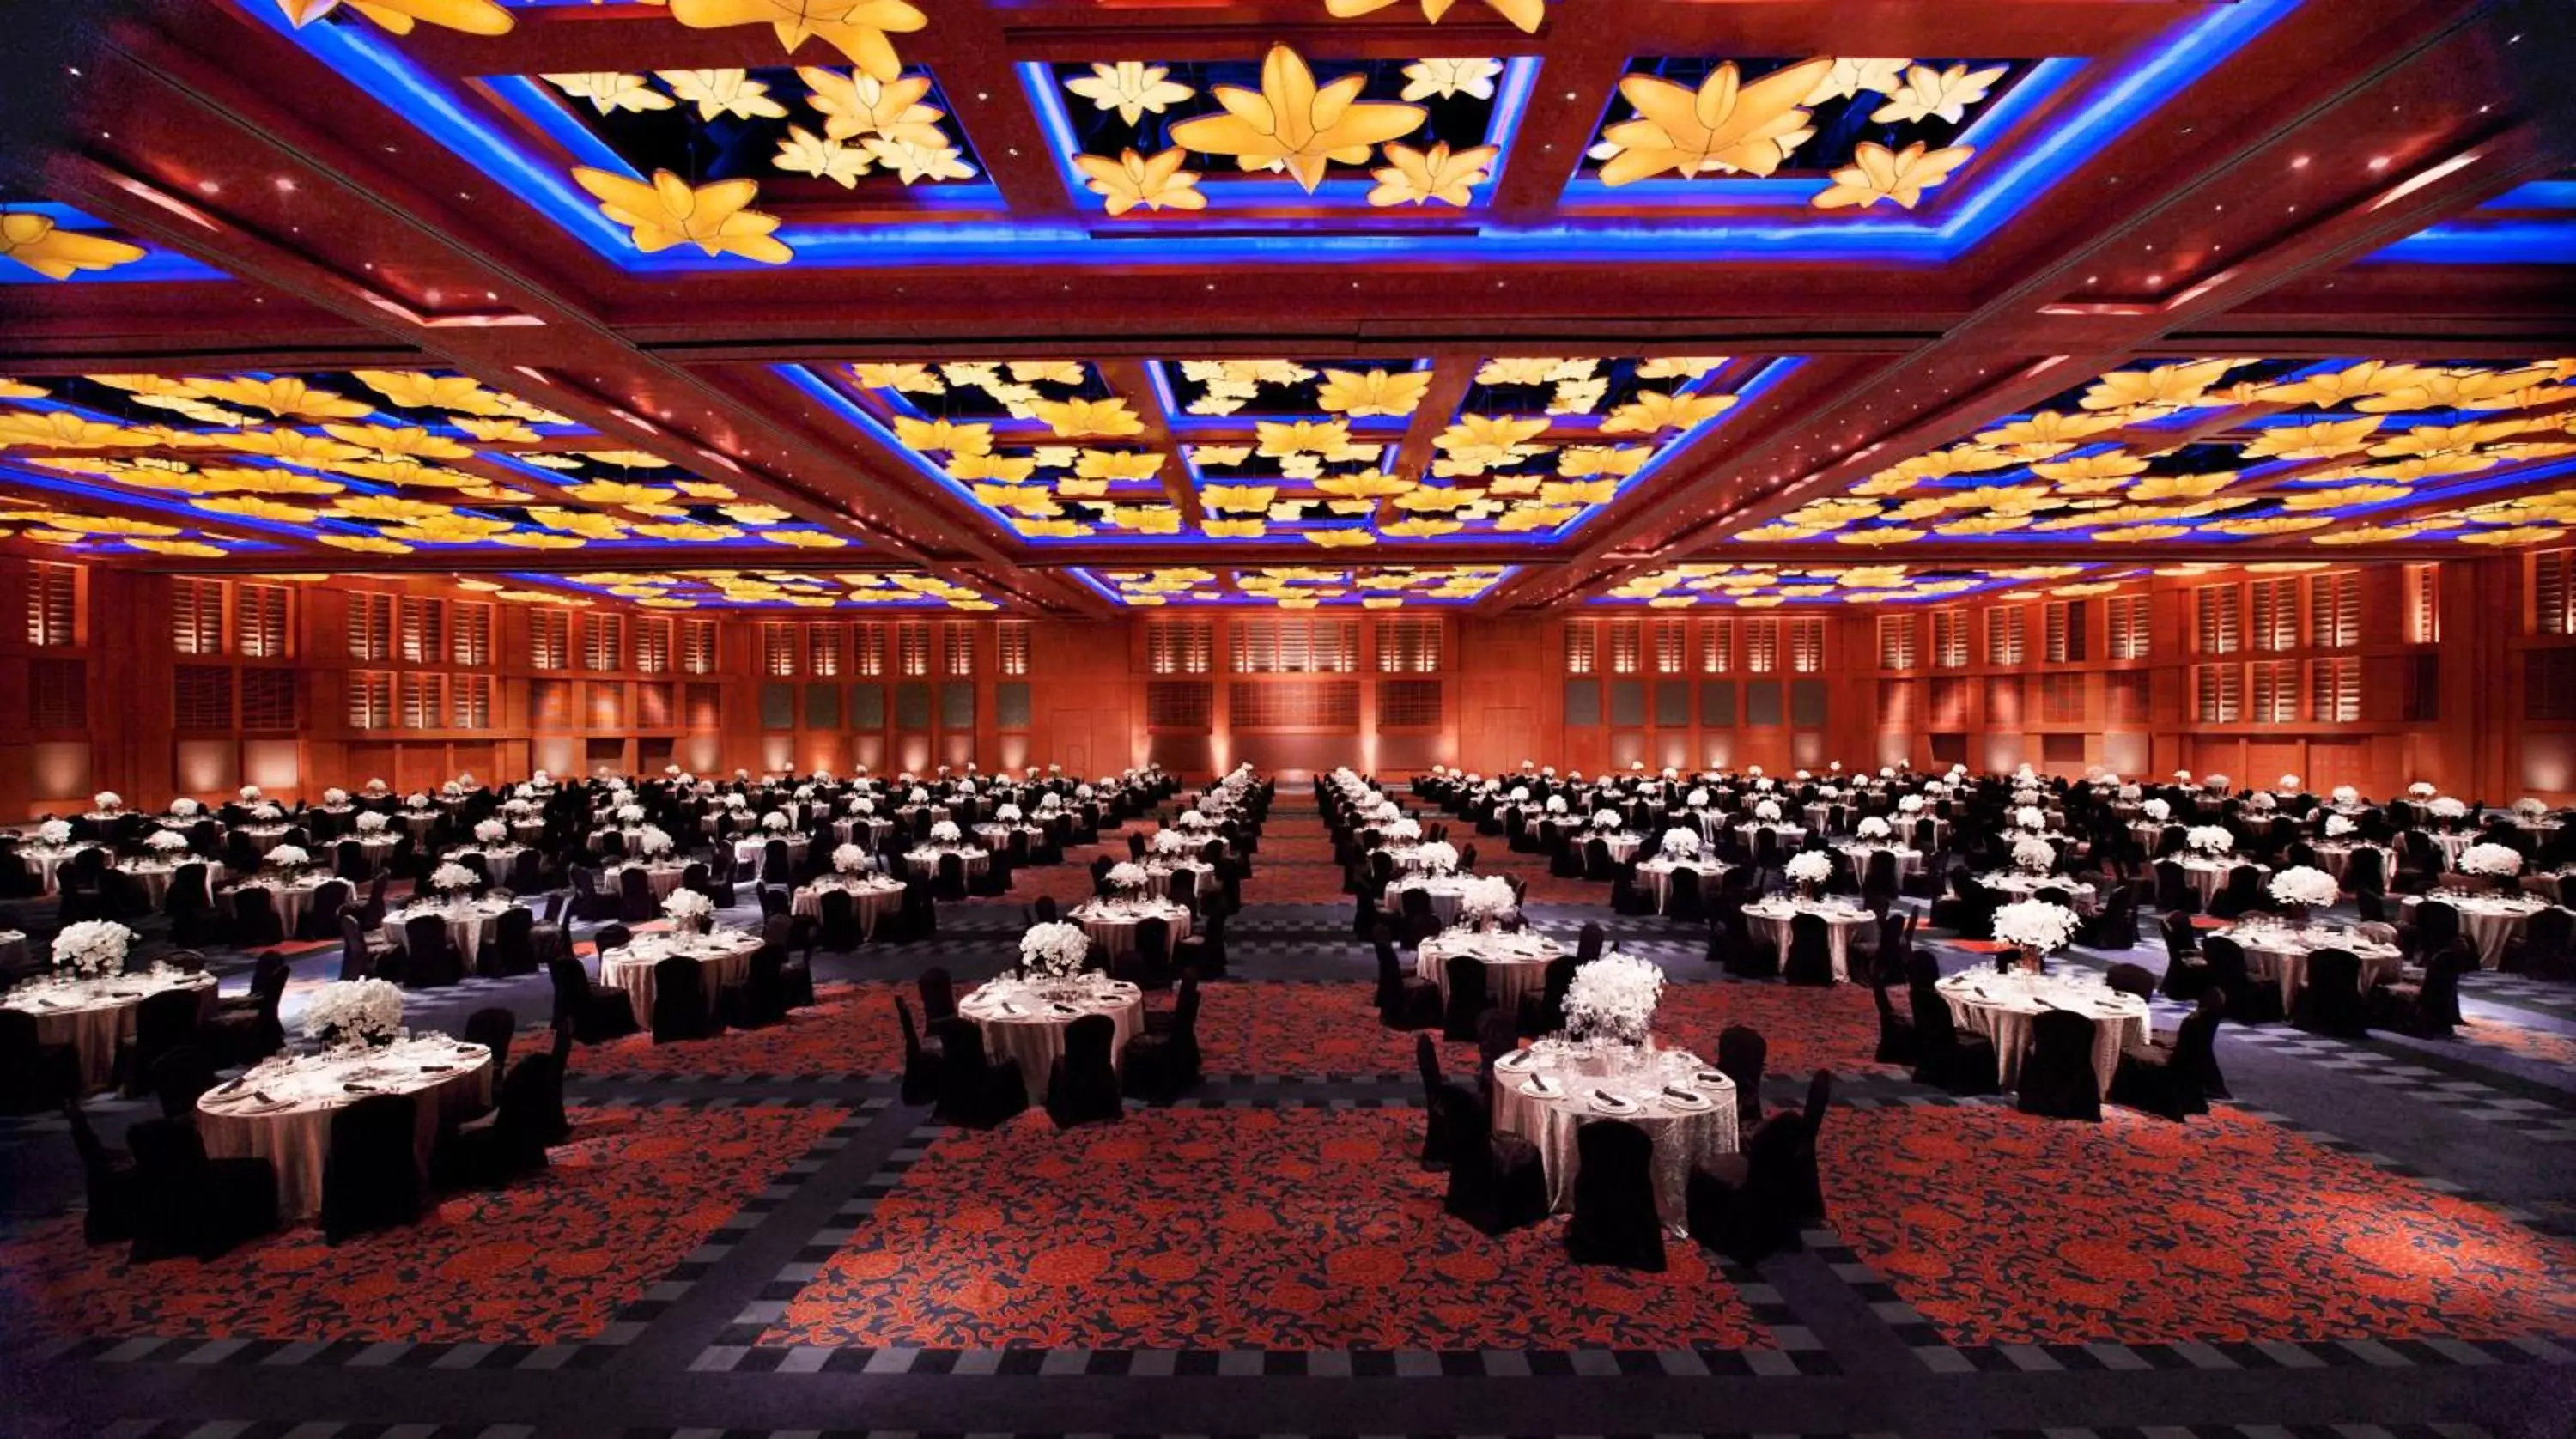 Banquet/Function facilities, Banquet Facilities in Resorts World Sentosa - Equarius Villas